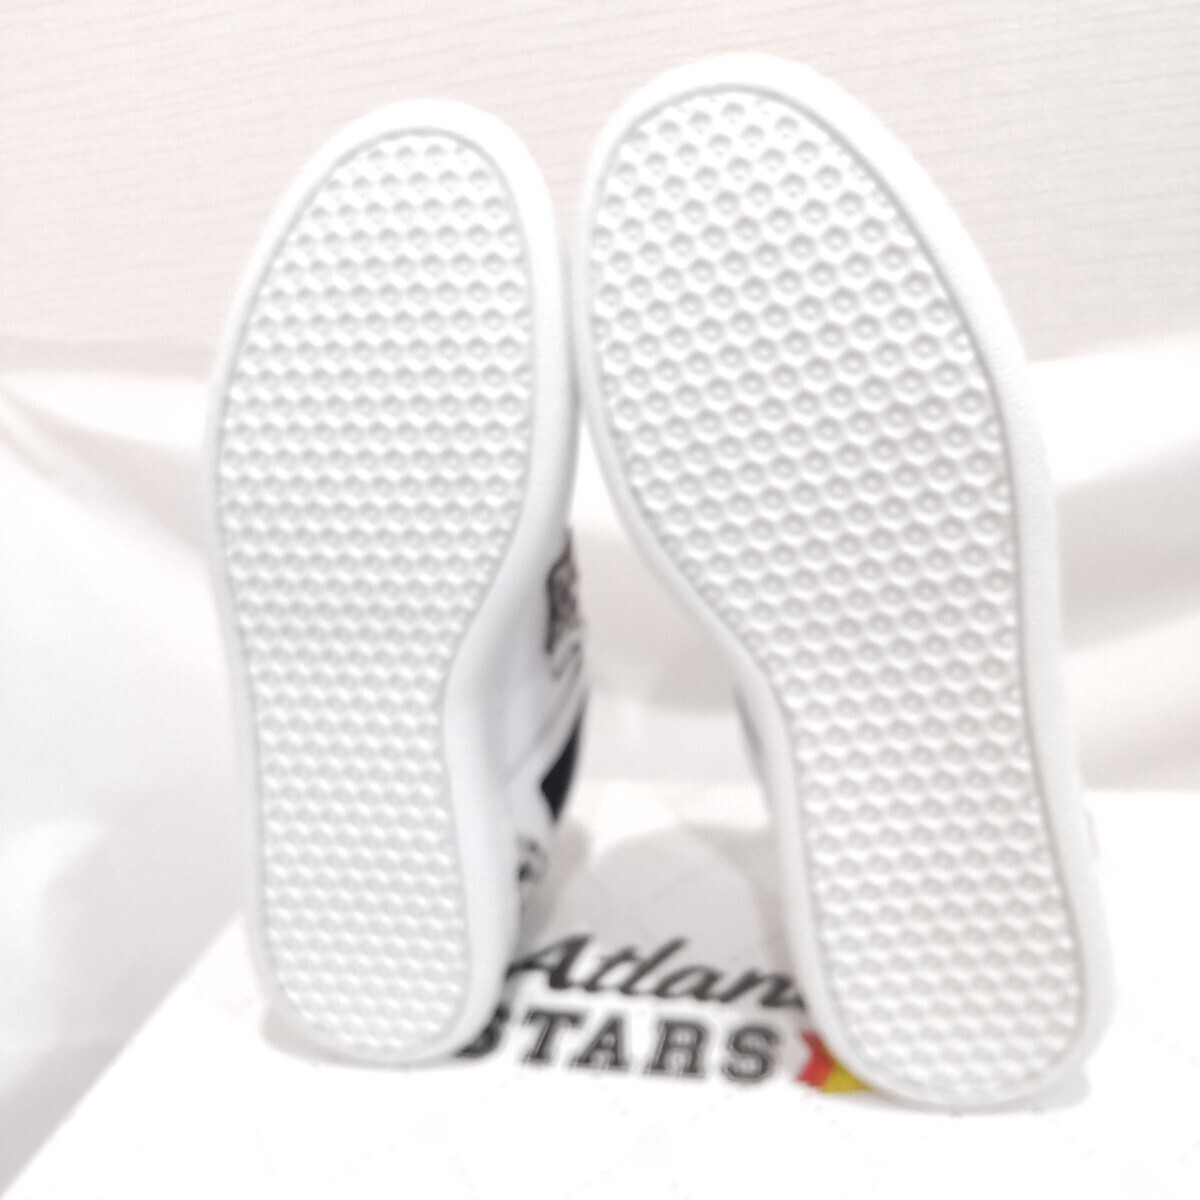 【最終セール中】 ATLANTIC STARS アトランティックスターズ スニーカー シューズ ベージュ ヒョウ柄 レオパード 24.0cm